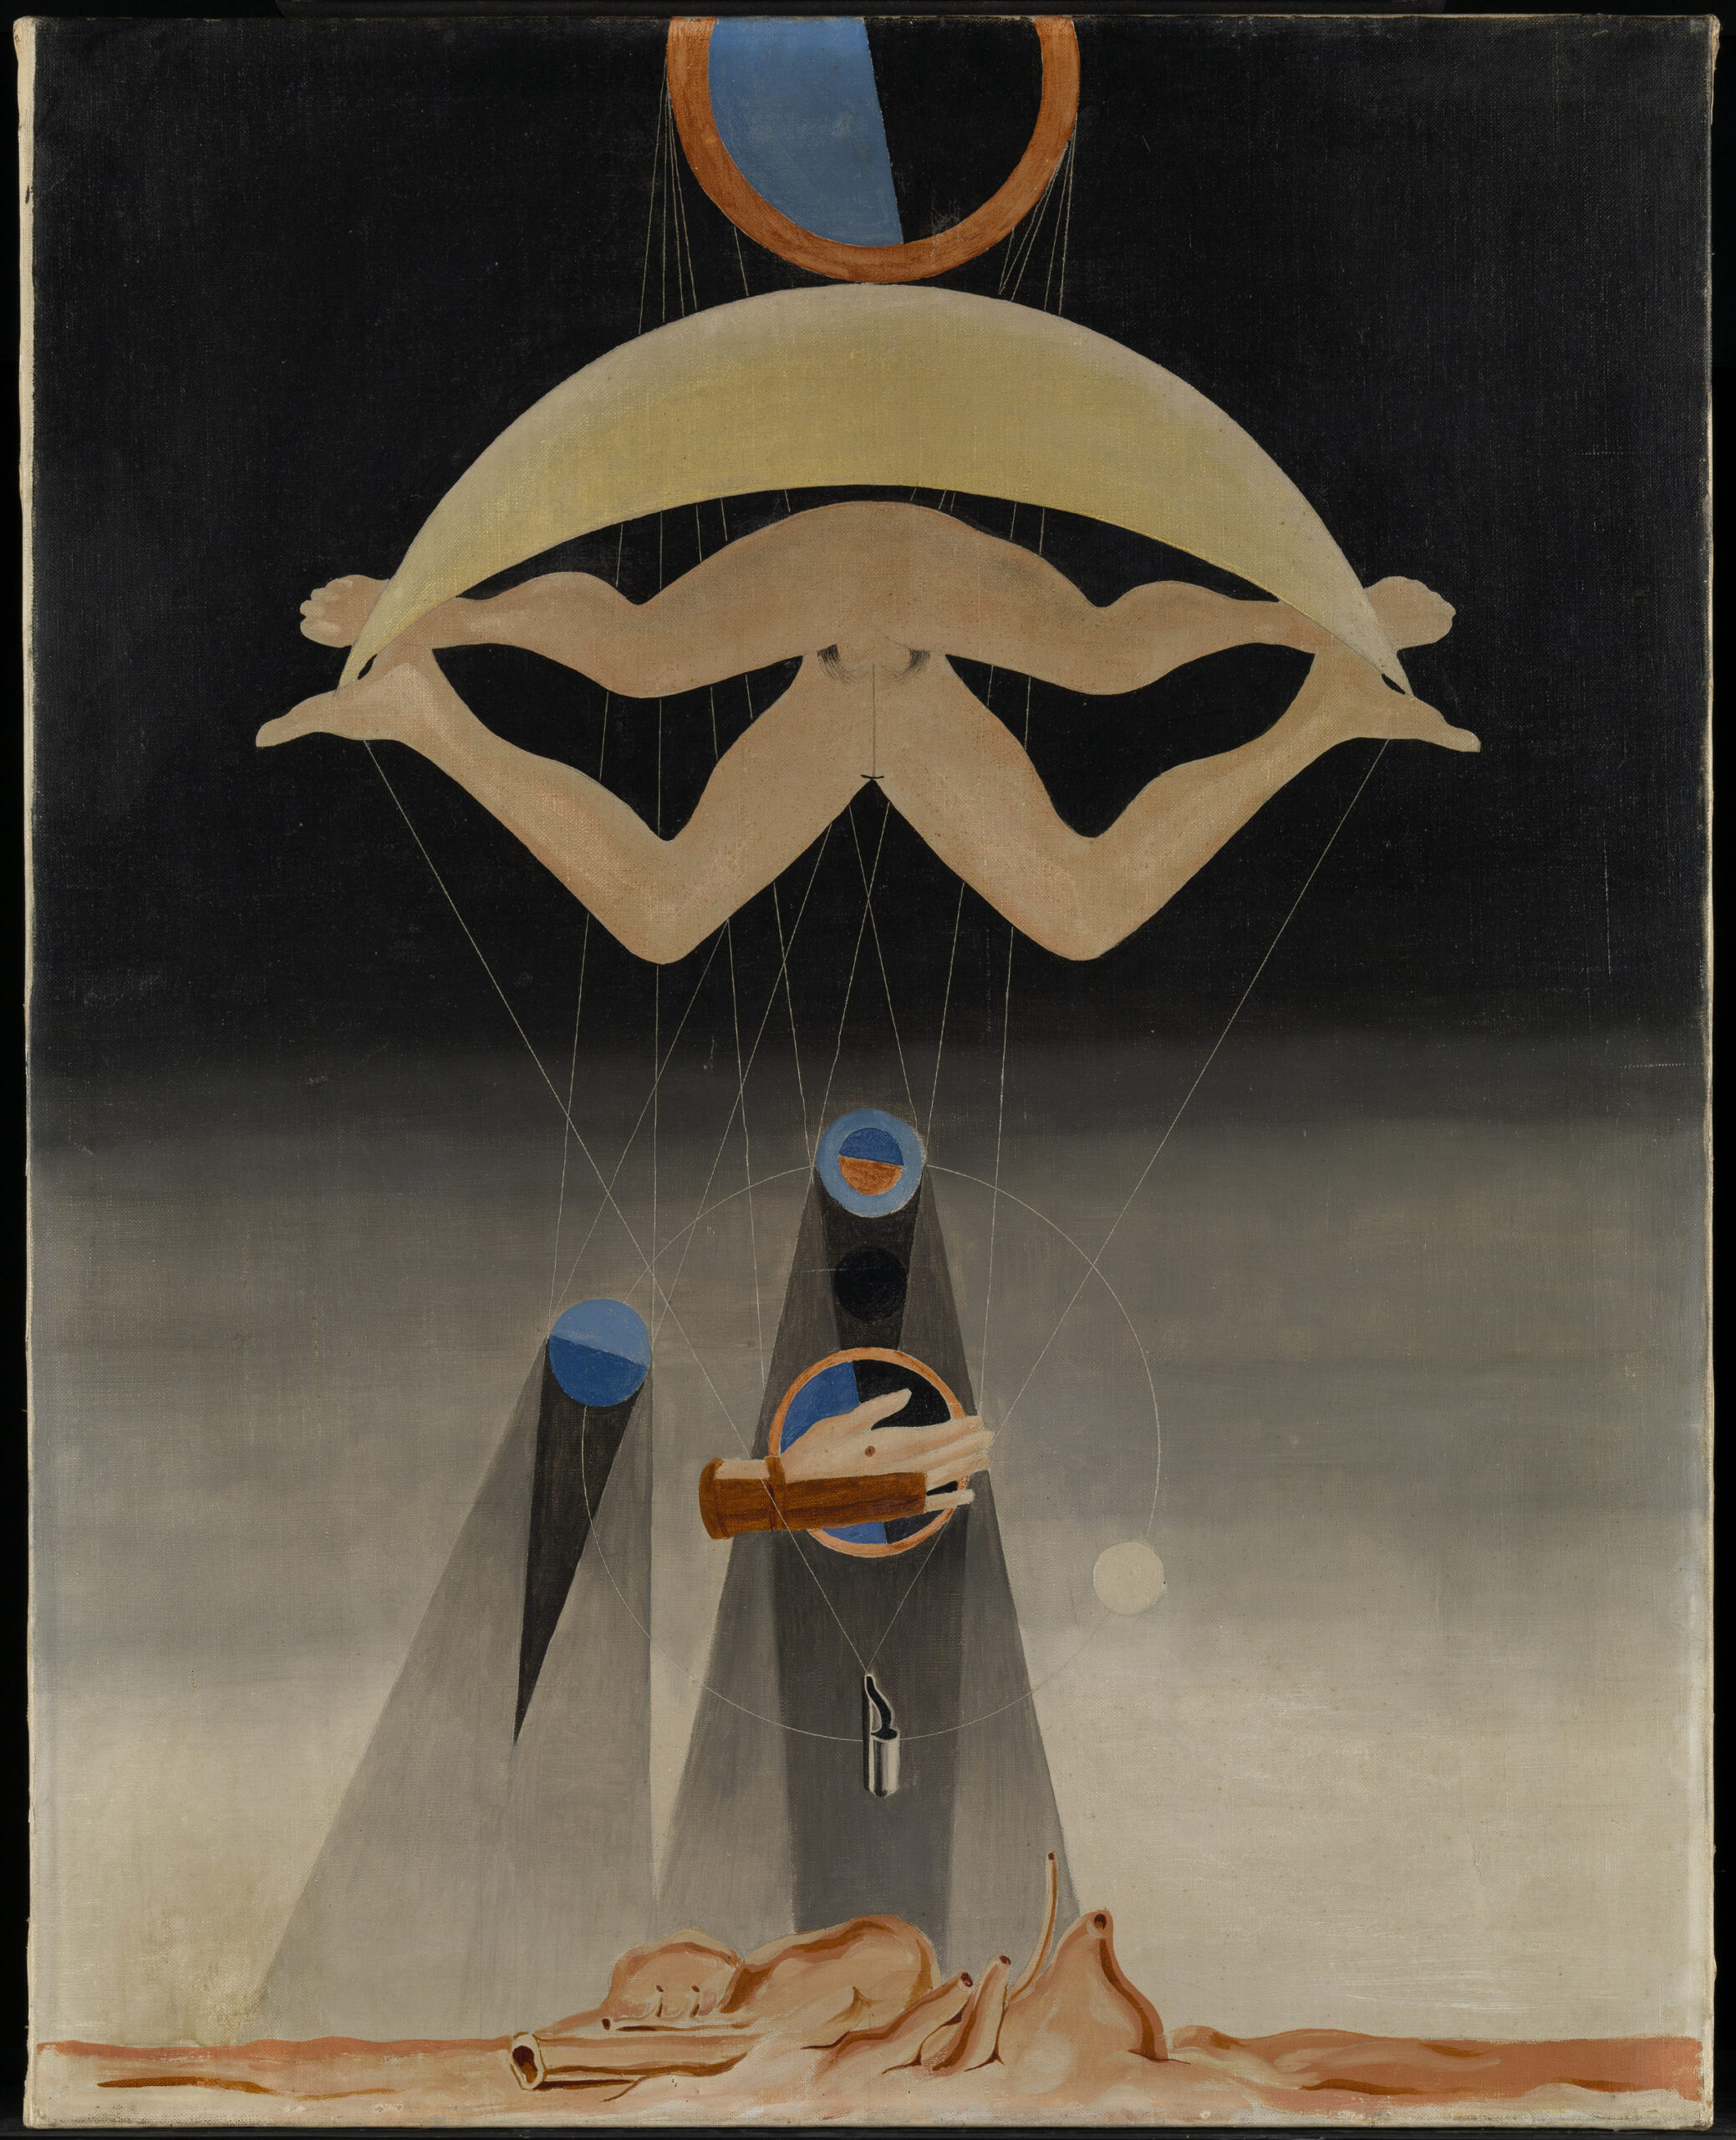 Max Ernst Gli uomini non ne sapranno nulla, 1923 Olio su tela, 80,3 x 63,8 cm, Tate, acquisito nel 1960. Copyright Tate, London, 2022. Copyright Max Ernst by SIAE 2022